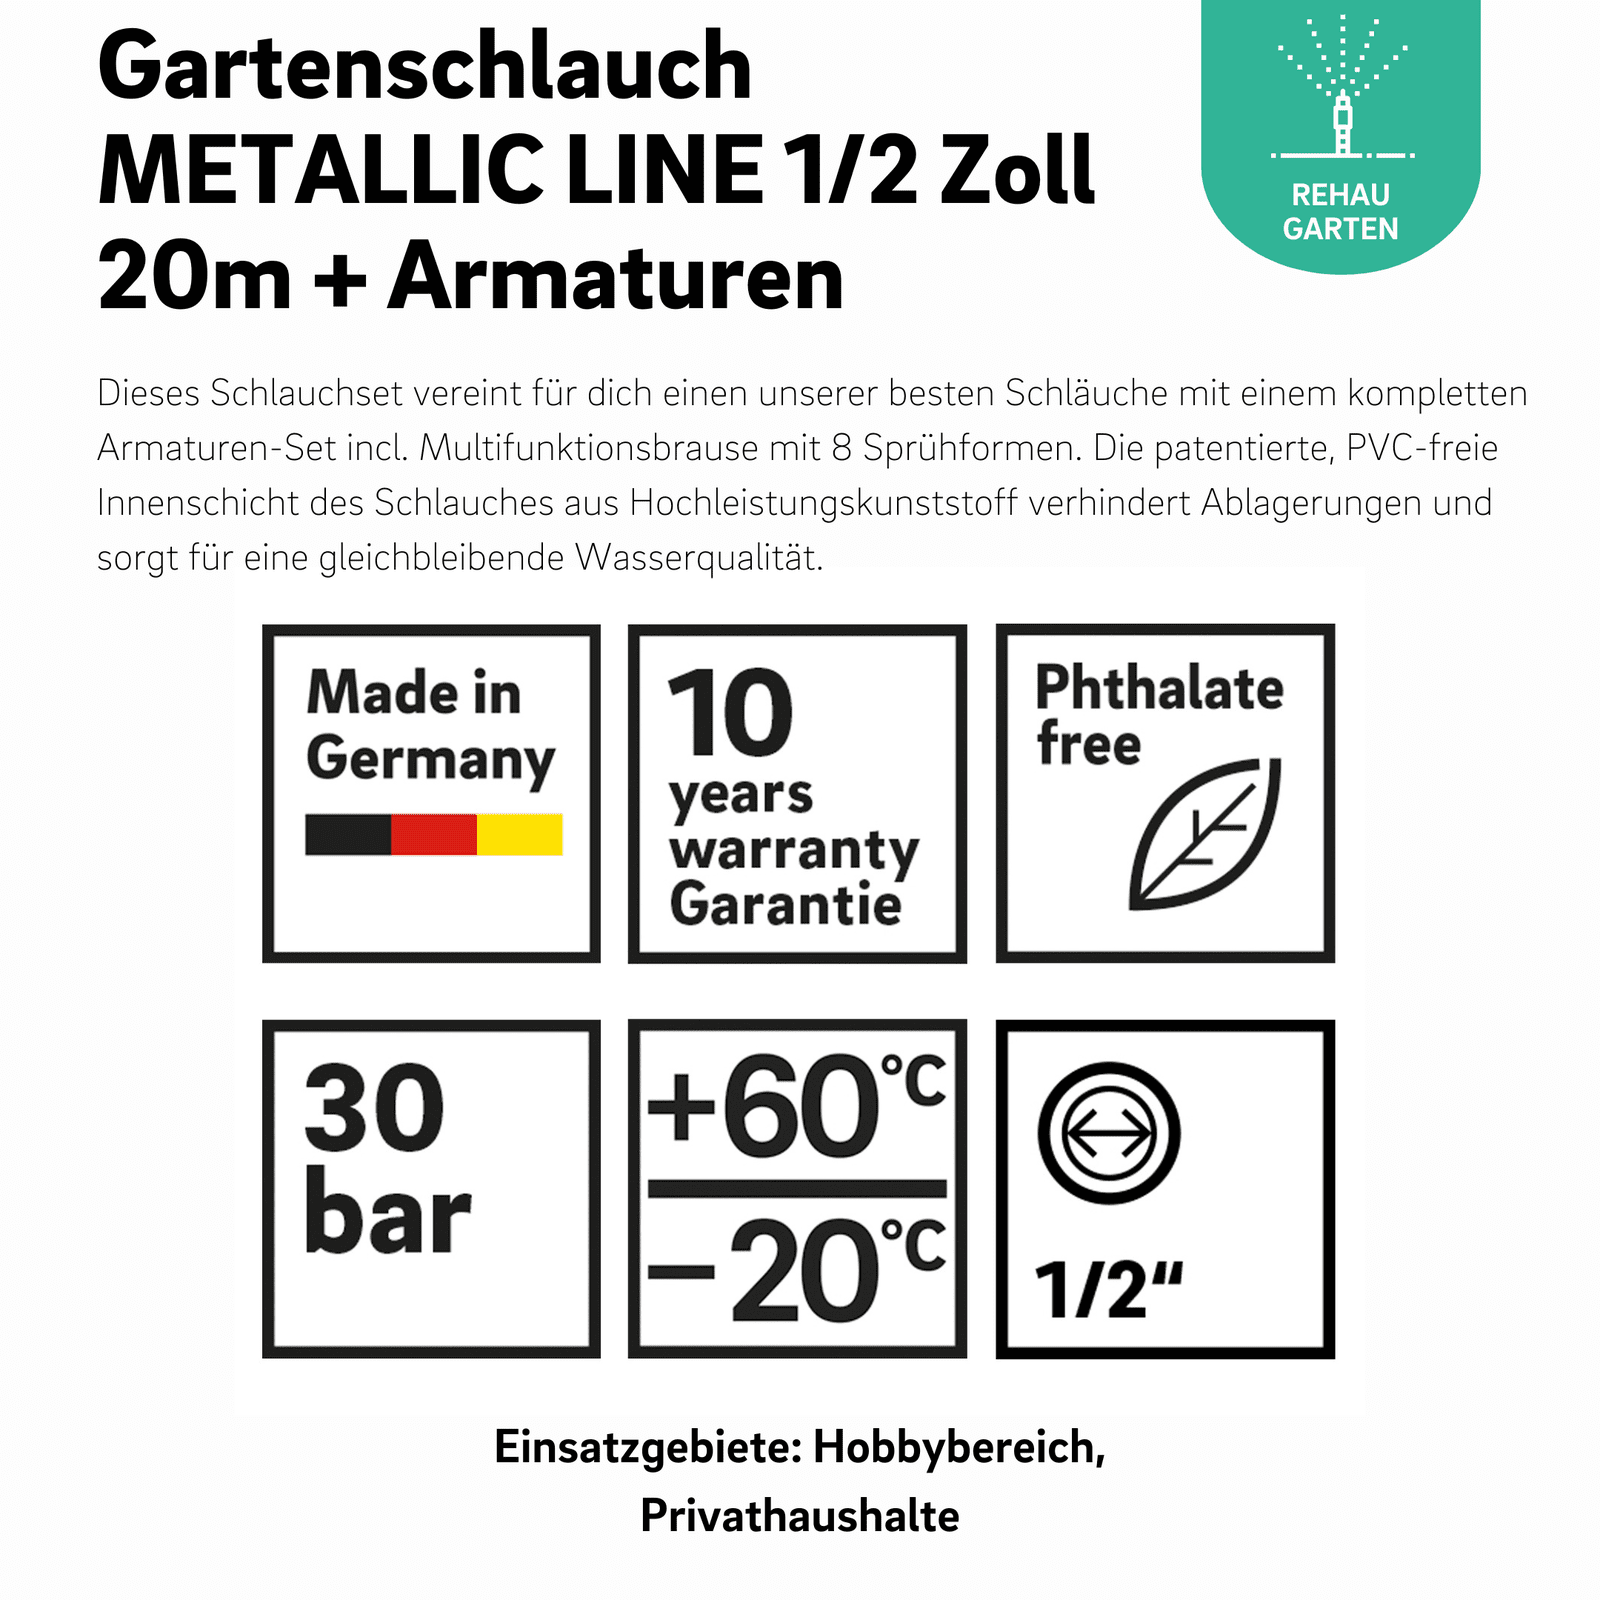 Gartenschlauchset METALLIC LINE 1/2 Zoll 20m + Armaturen - REHAU Gartenshop